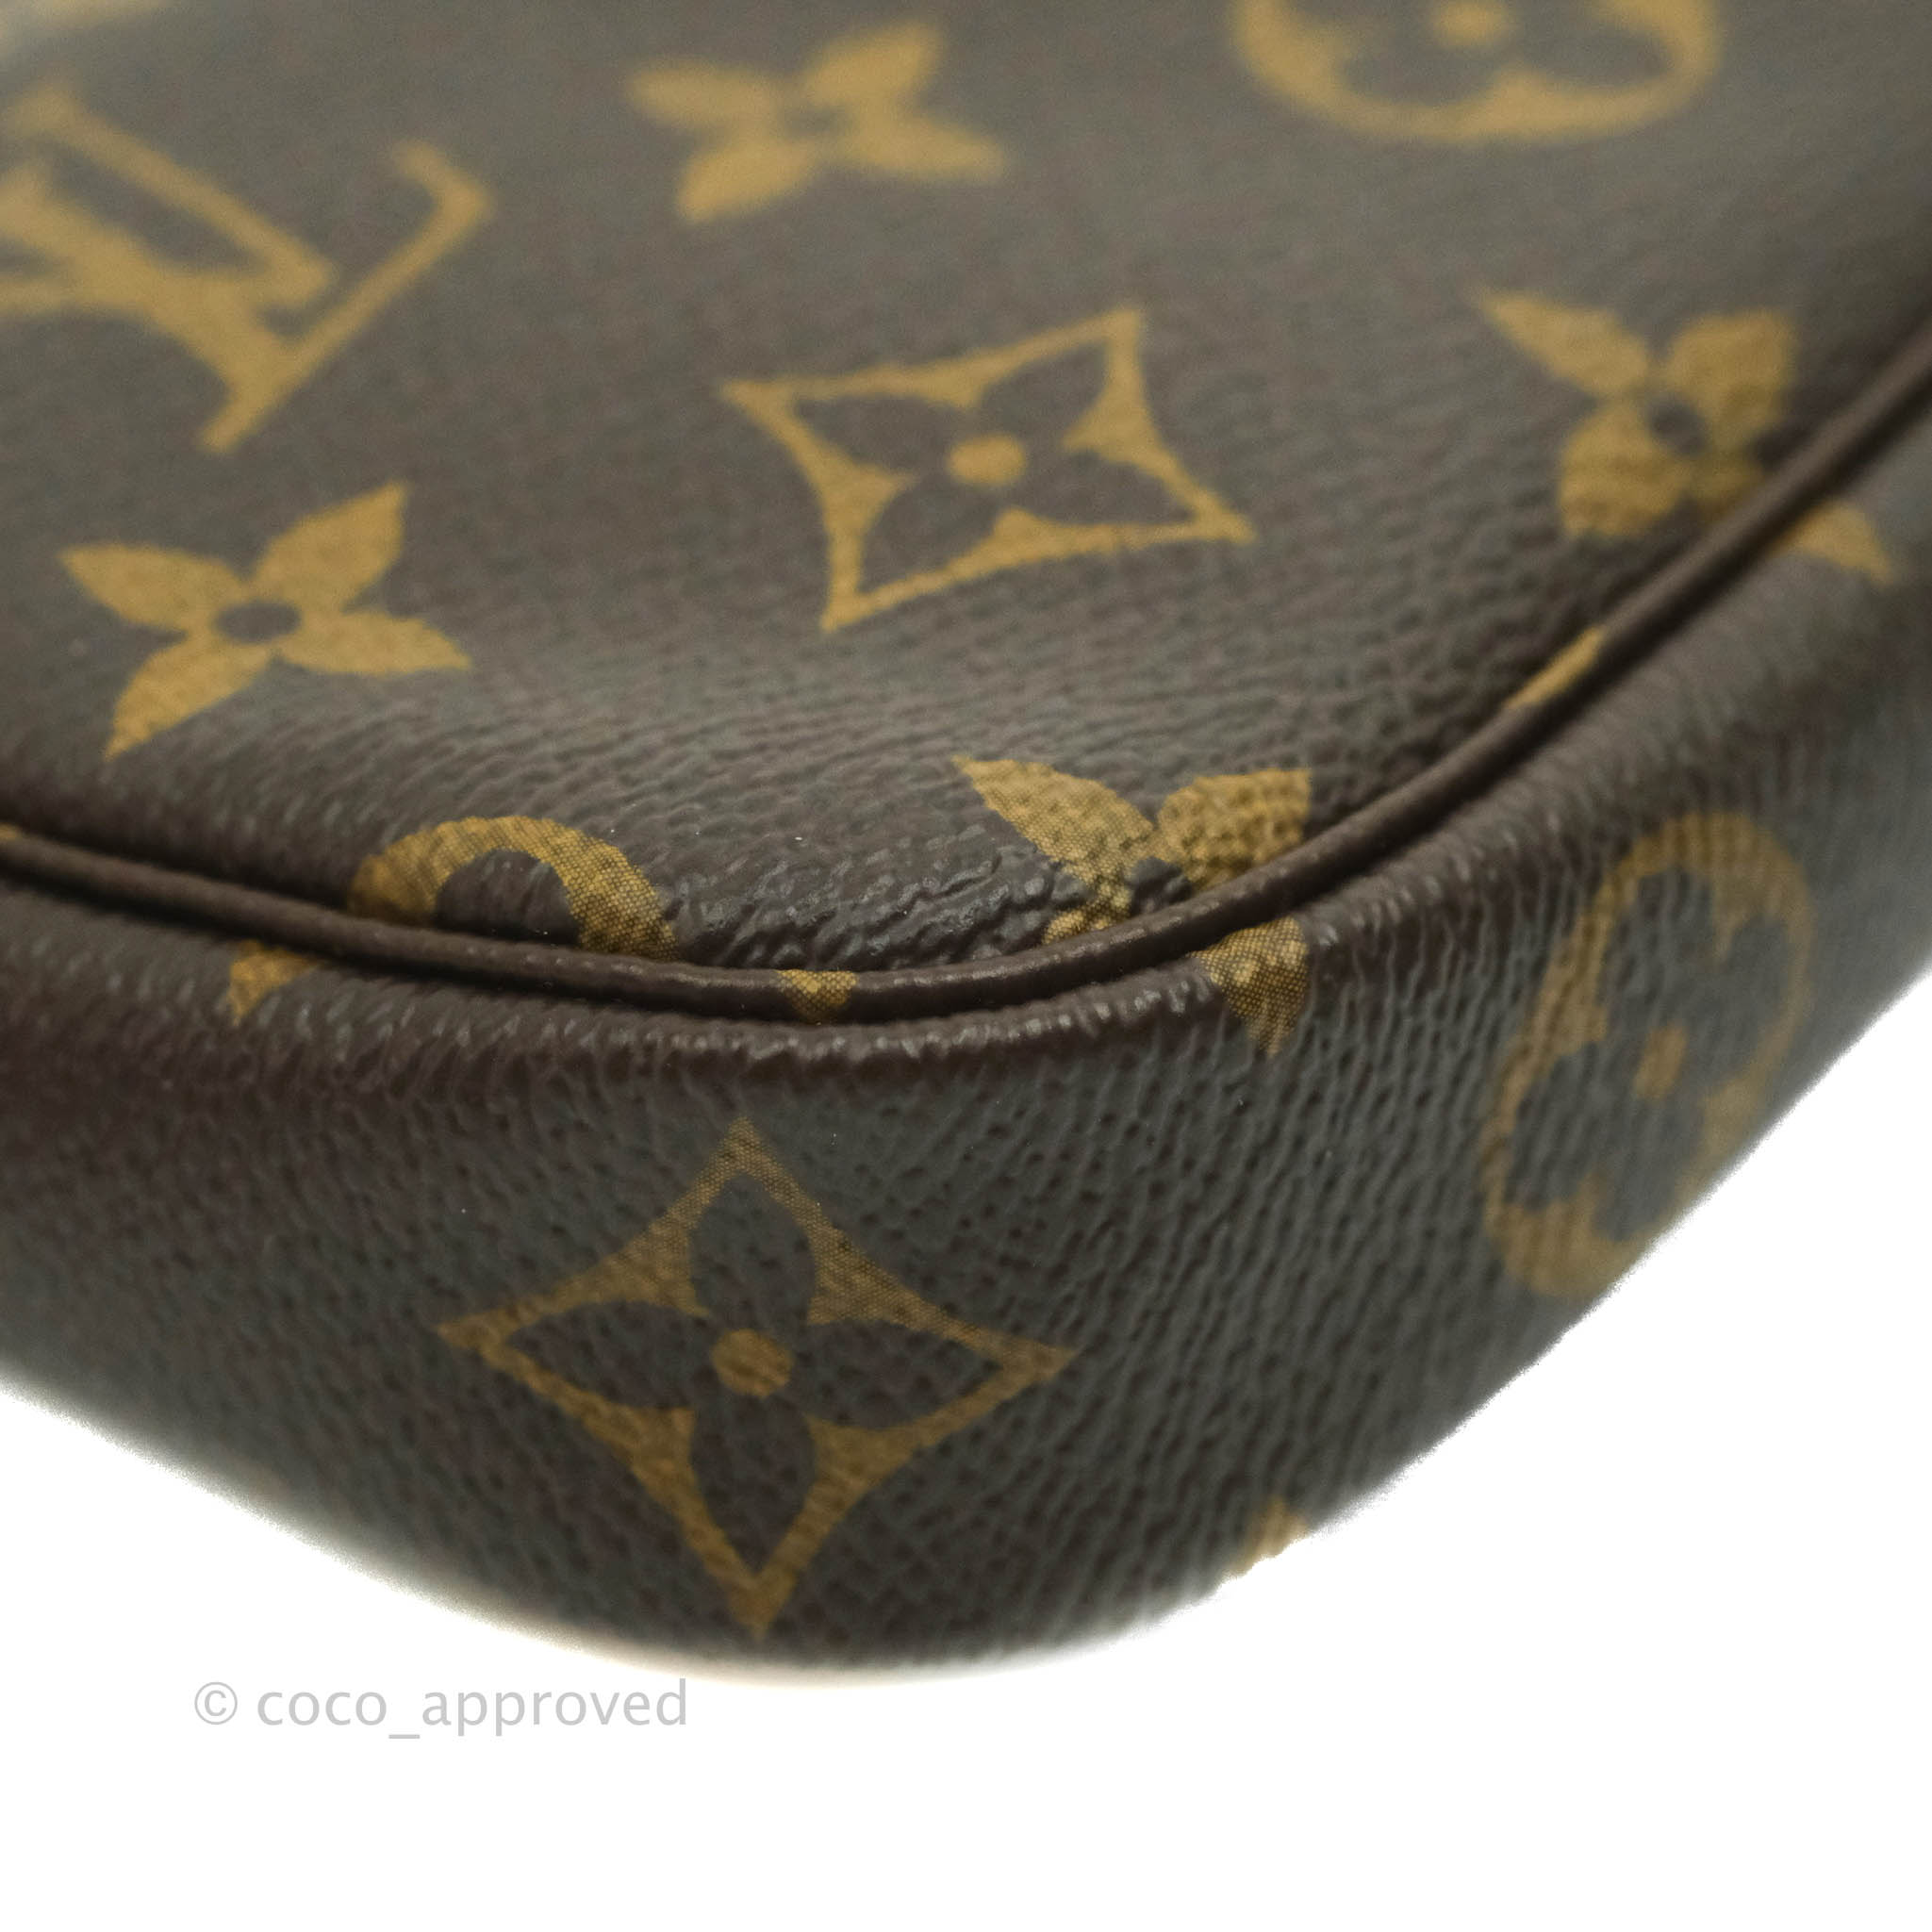 Shop Louis Vuitton ETUI VOYAGE GM [London department store new item] by  MINSYALE